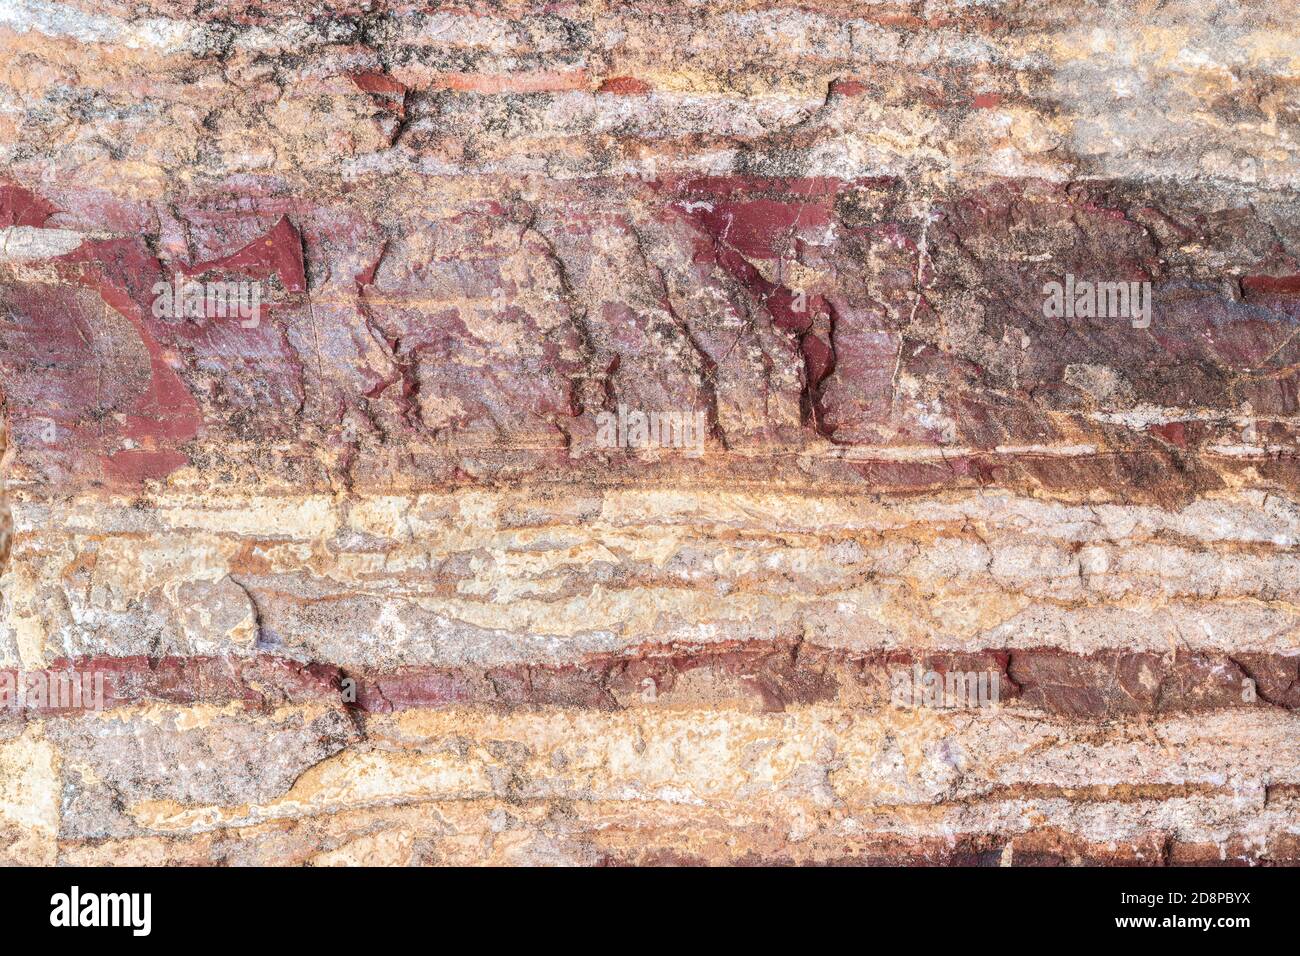 Roccia metamorfica precambriana, regione del Lago superiore, W. penisola superiore Michigan, USA, 4.5 a 5 miliardi di anni, di Dominique Braud/Dembinsky Foto A Foto Stock